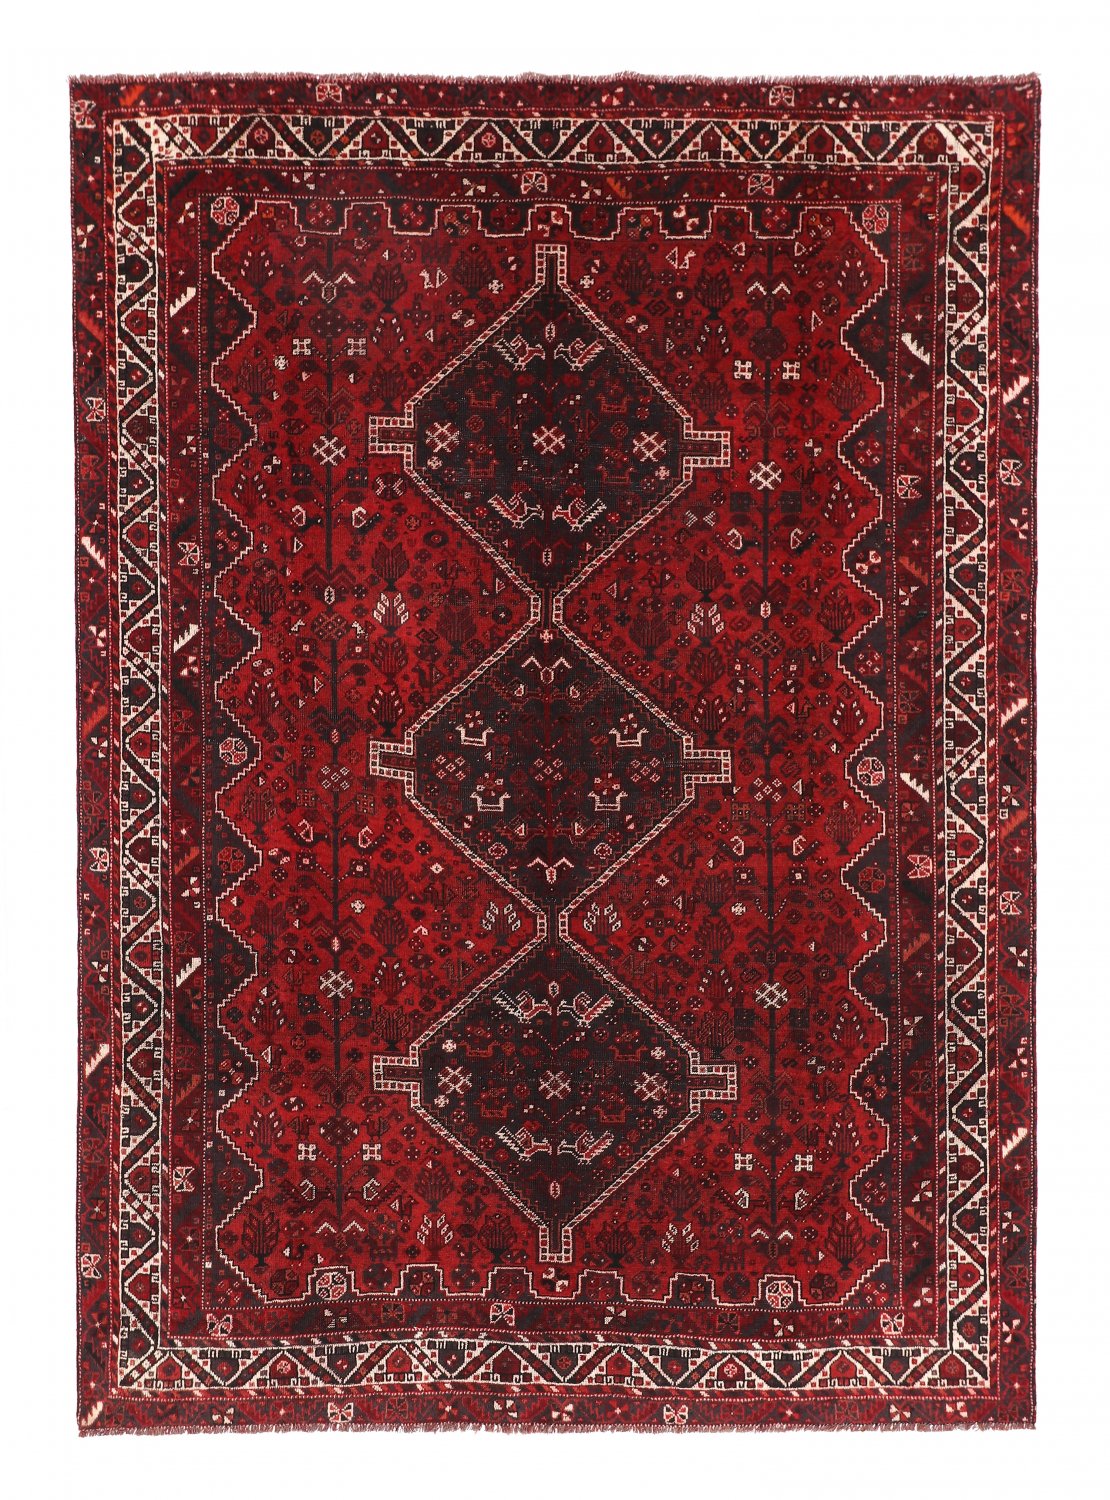 Persian rug Hamedan 301 x 215 cm